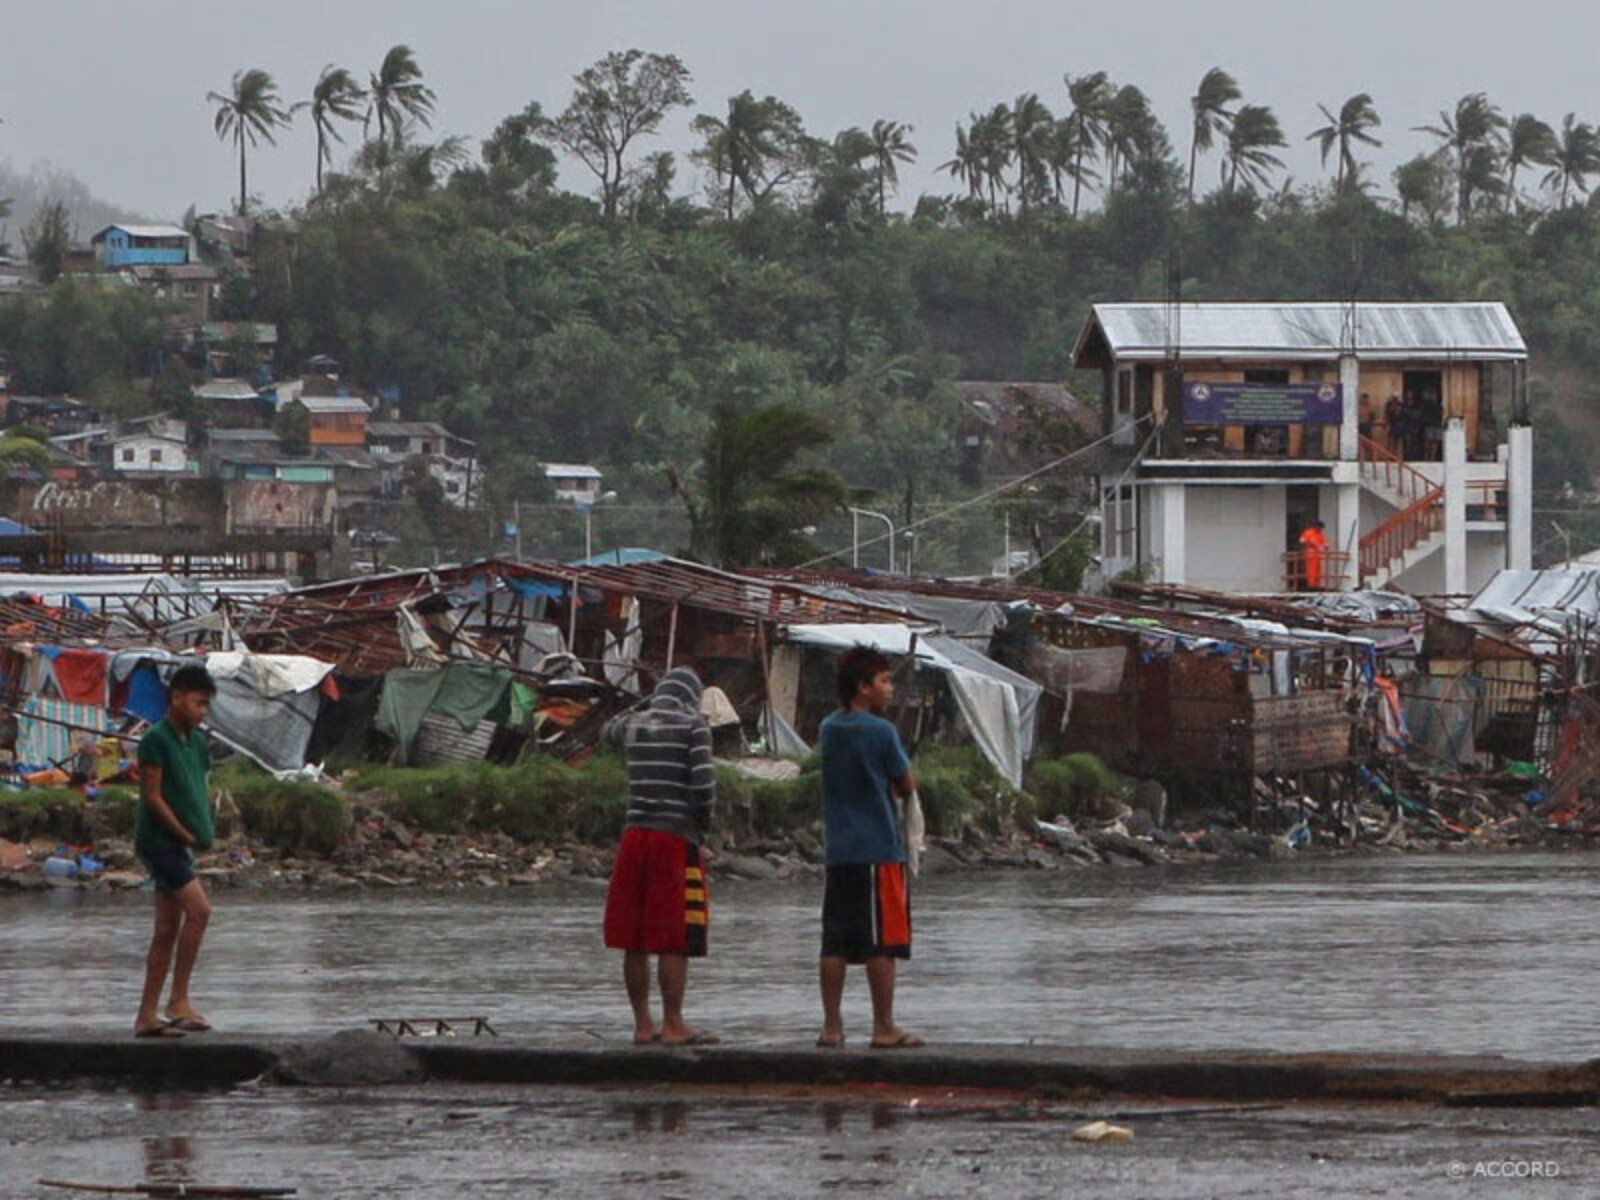 Taifun Hagupit – 13 Monate nach Taifun Haiyan wurden die Philippinen abermals von einem besonders starken Wirbelsturm bedroht. Schlimmeres konnte verhindert werden, da Lehren aus dem verheerenden letzten Taifun gezogen wurden.